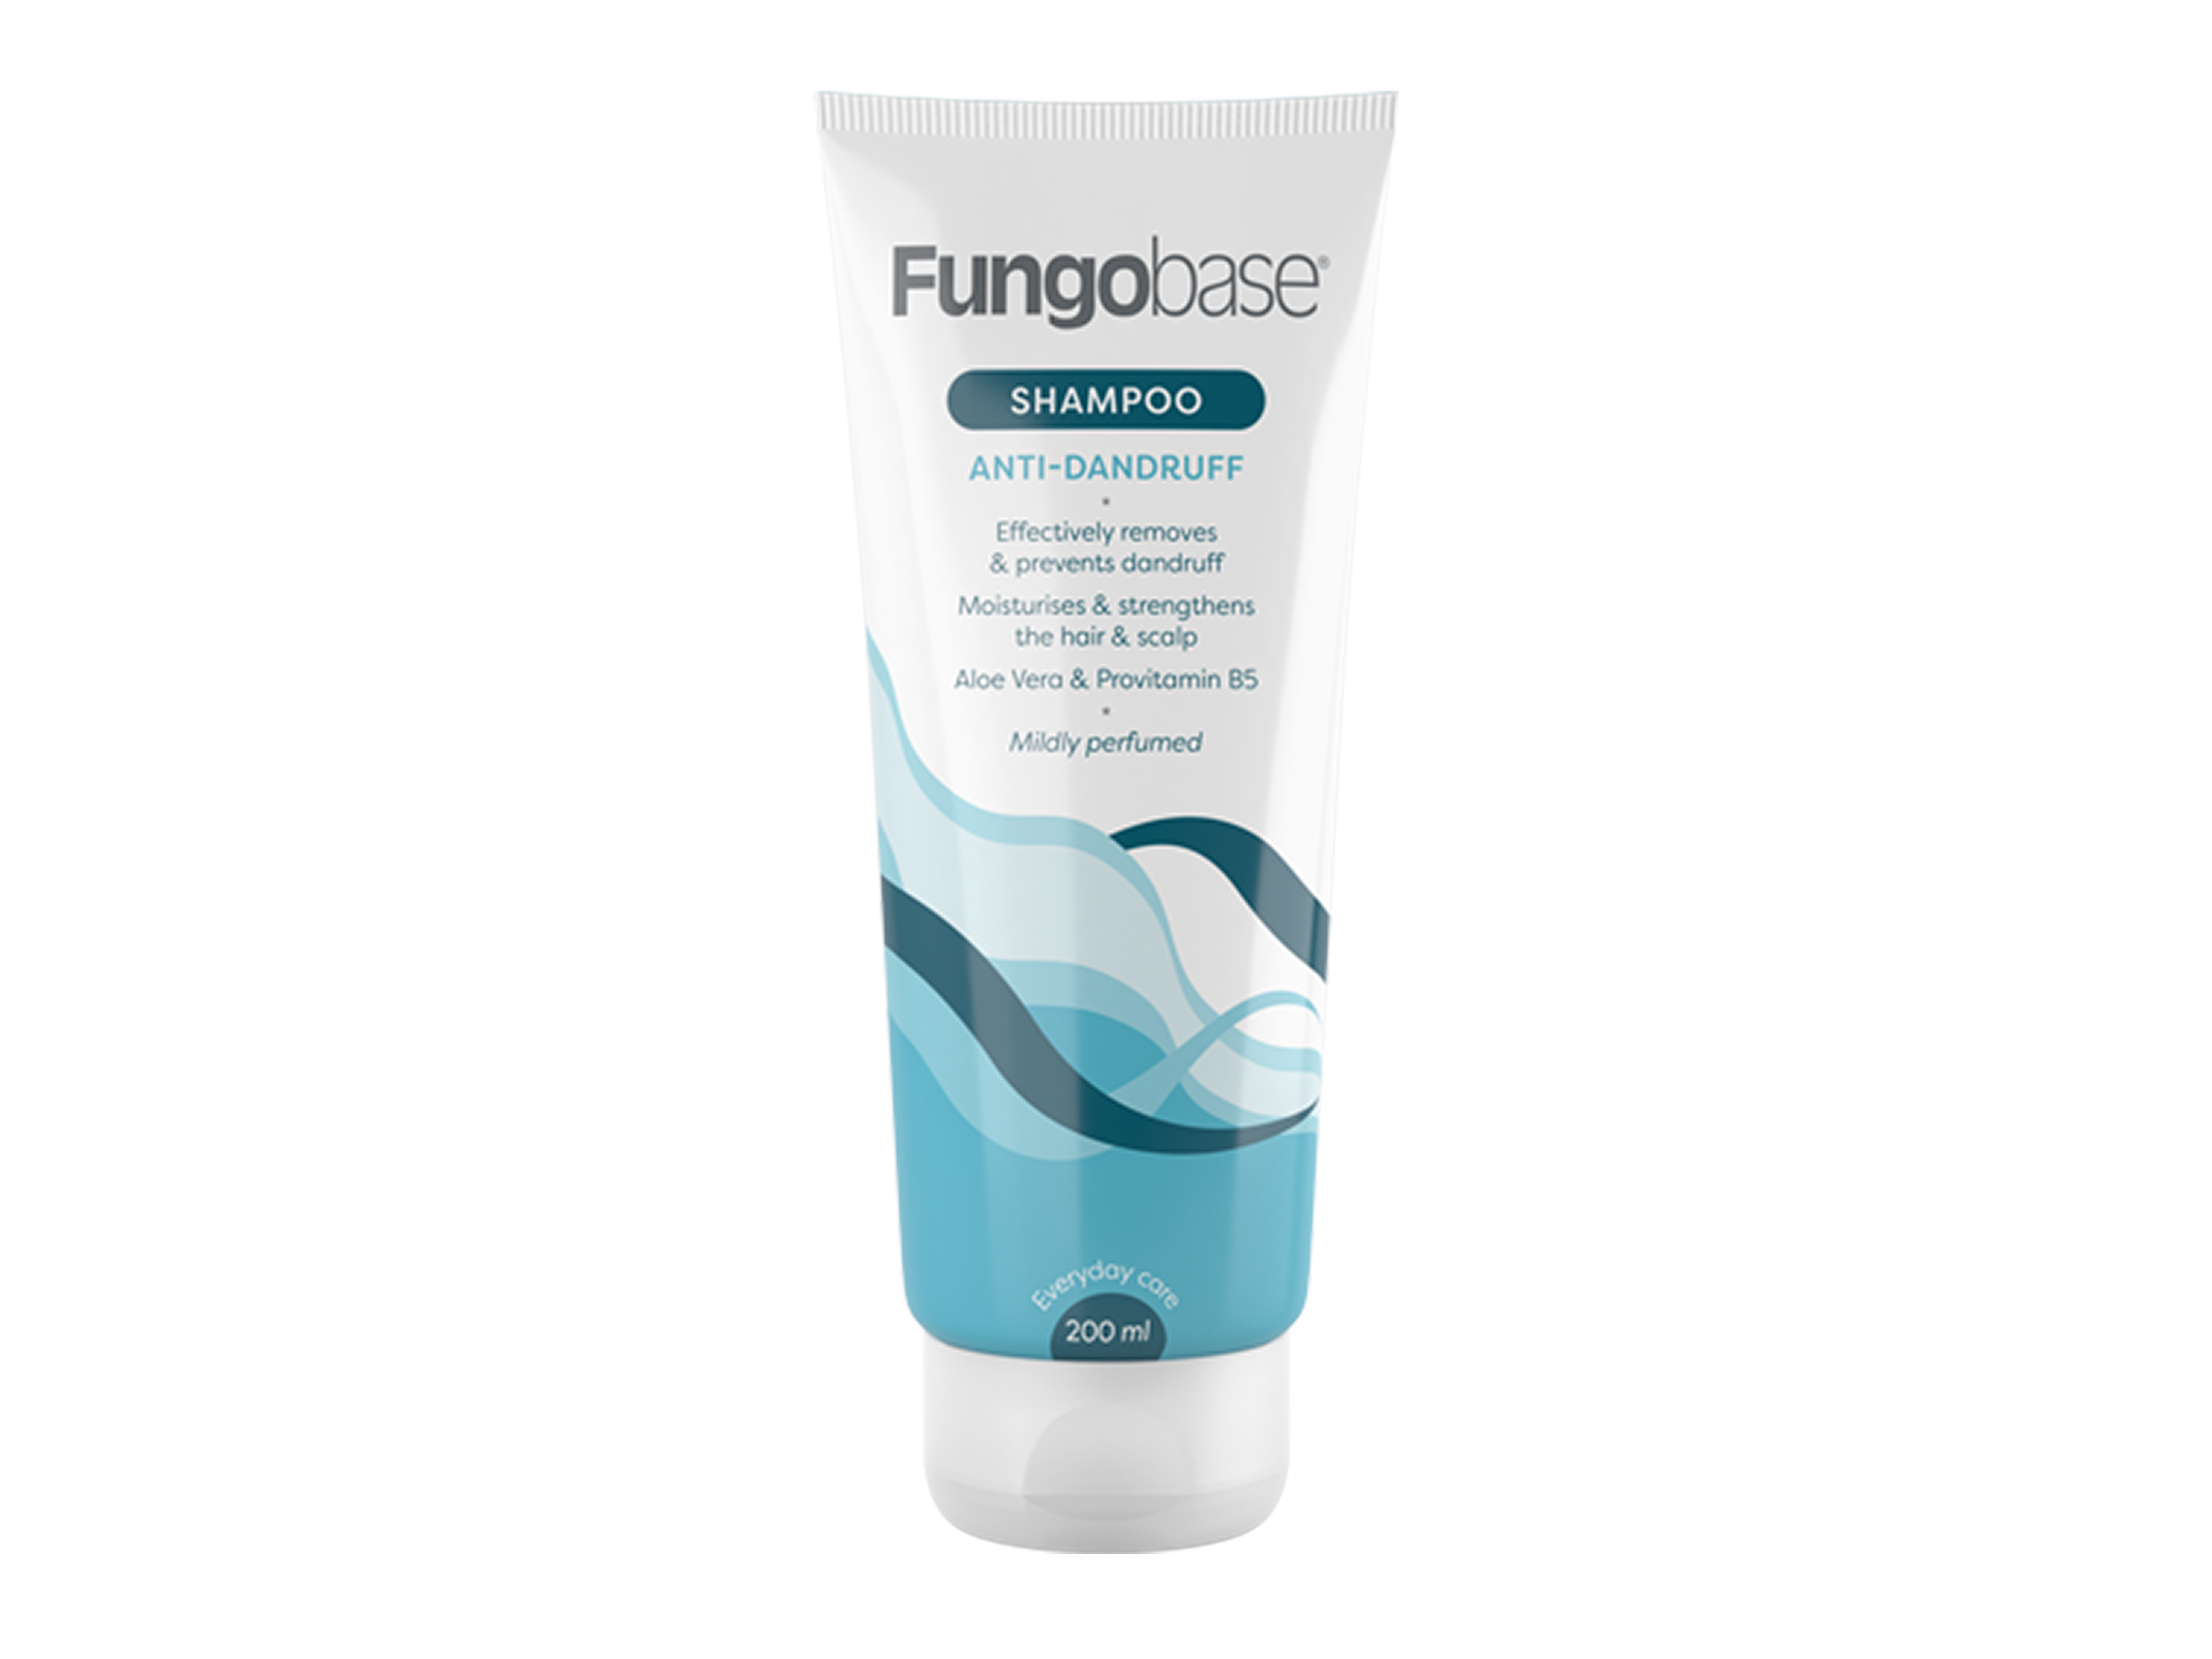 Fungobase Anti-Dandruff Shampoo, 200 ml